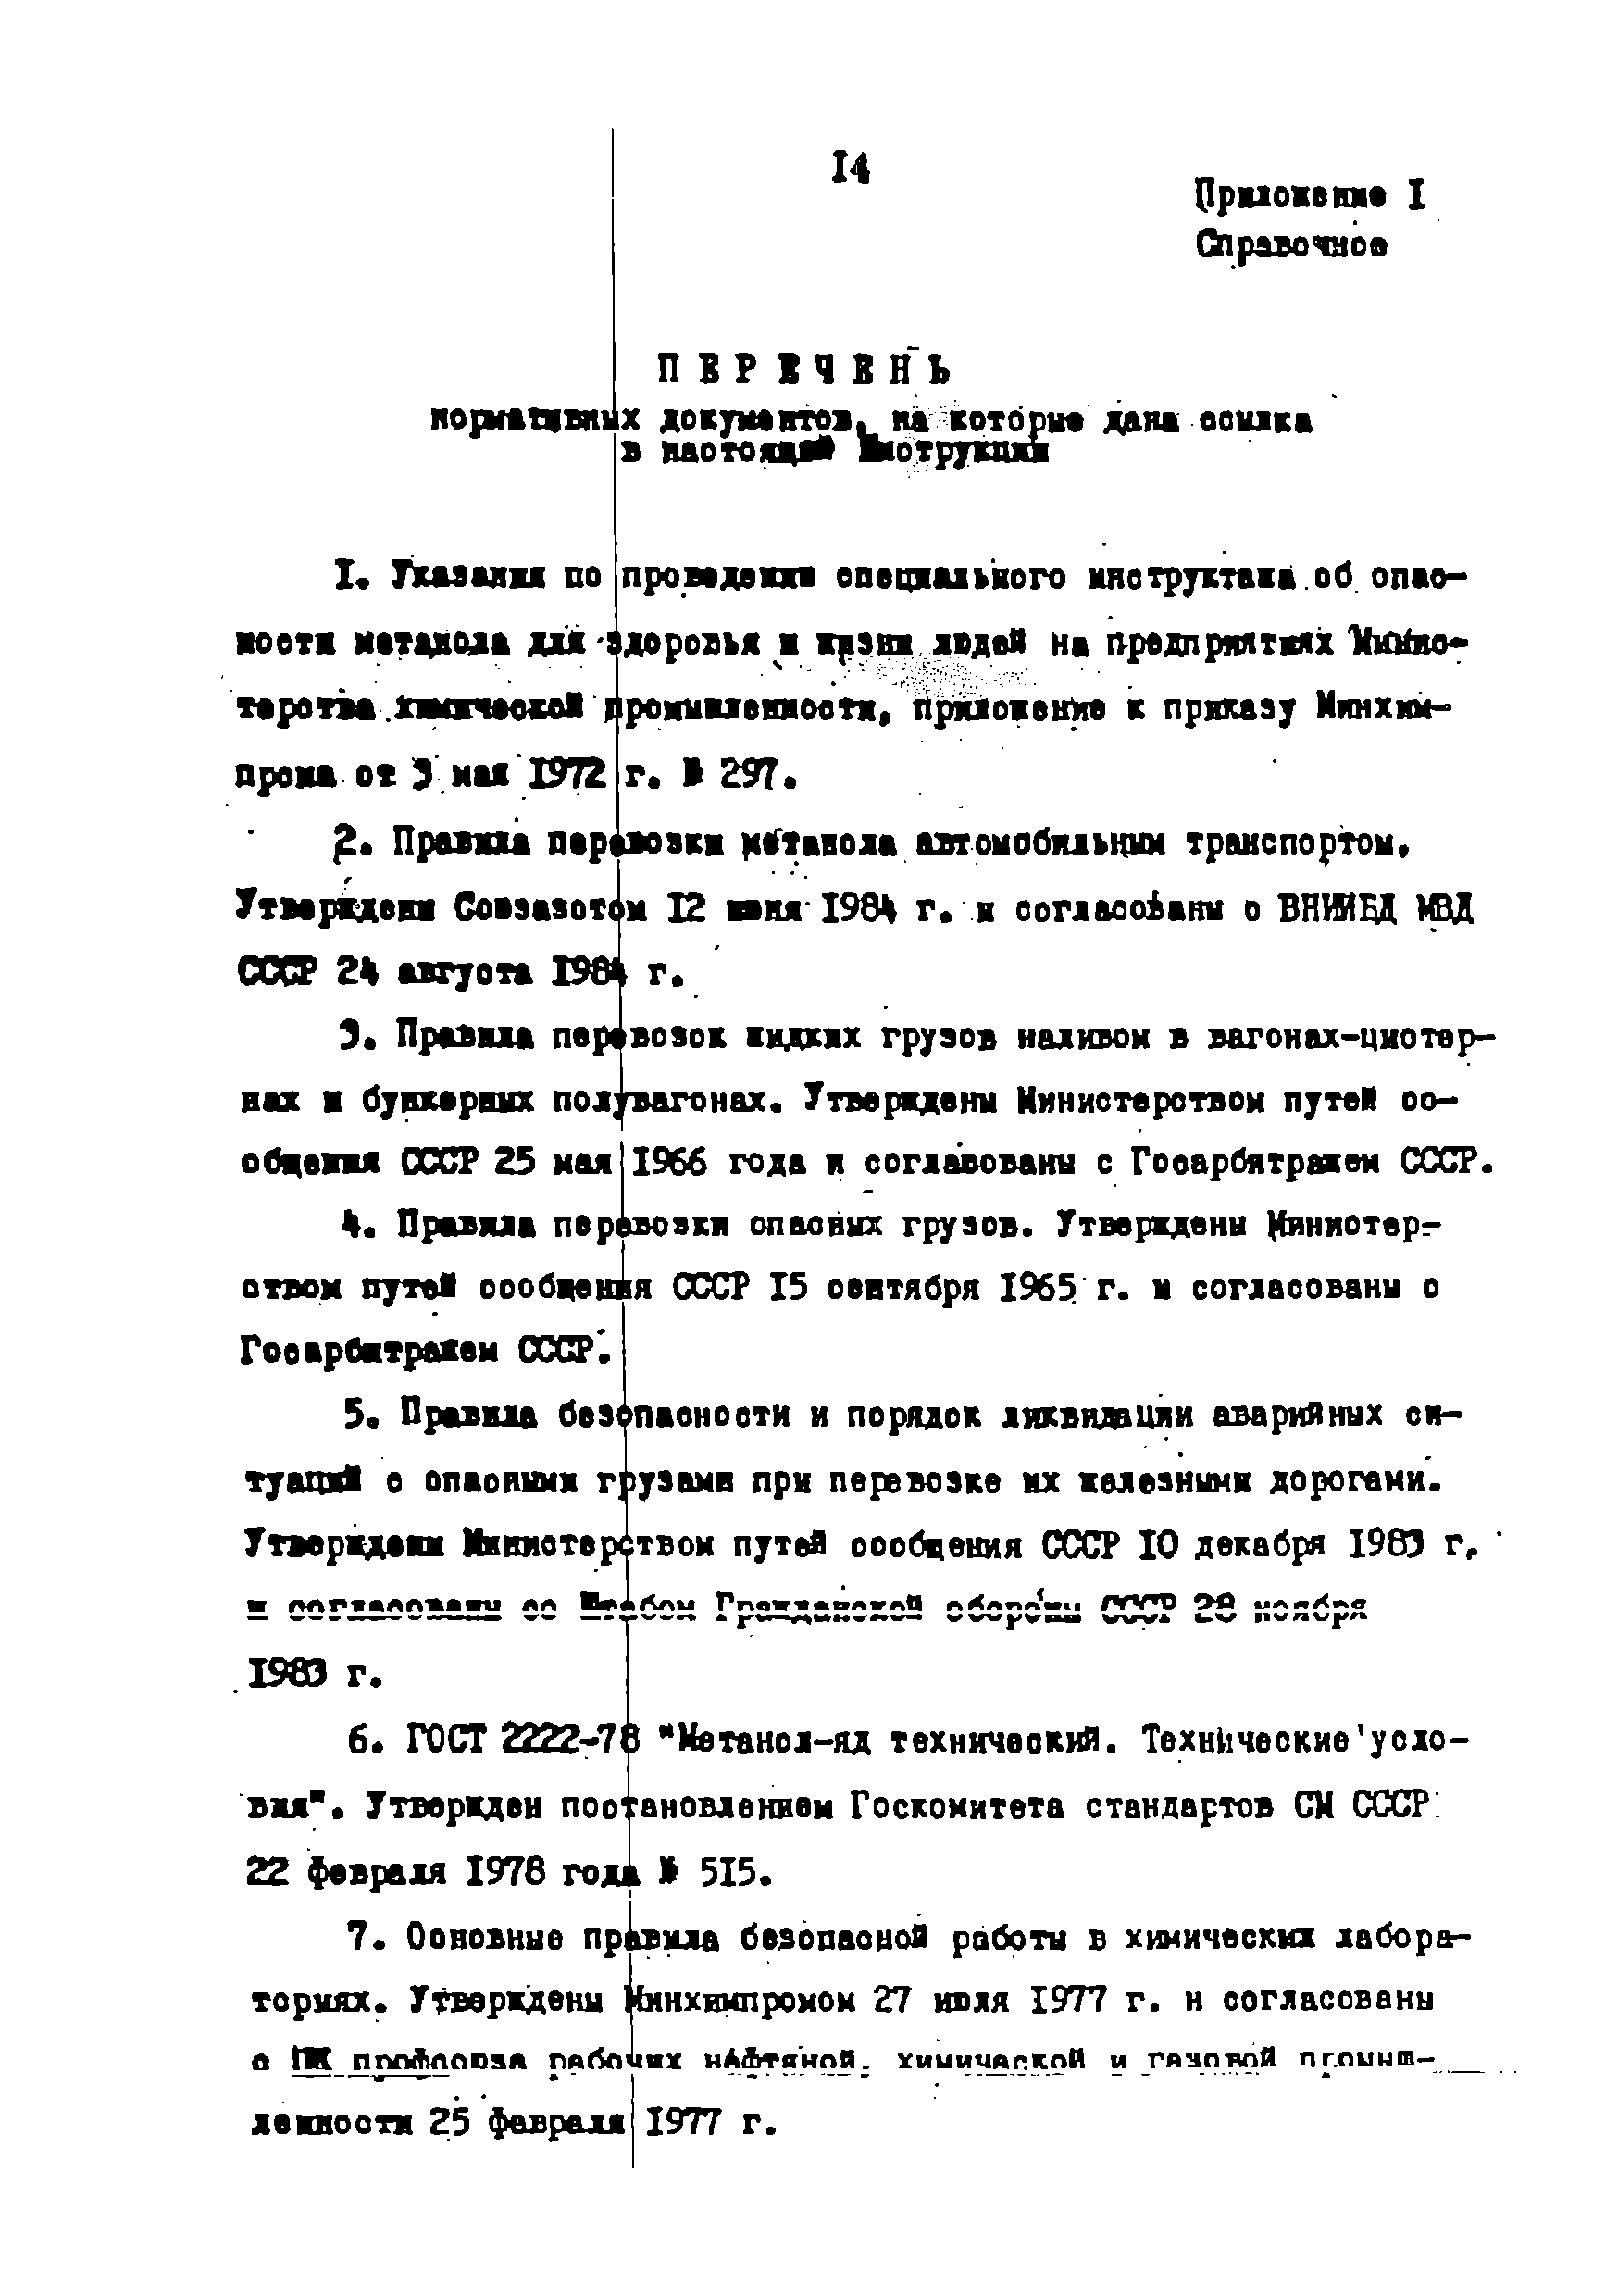 ВНЭ 28-86/Минхимпром